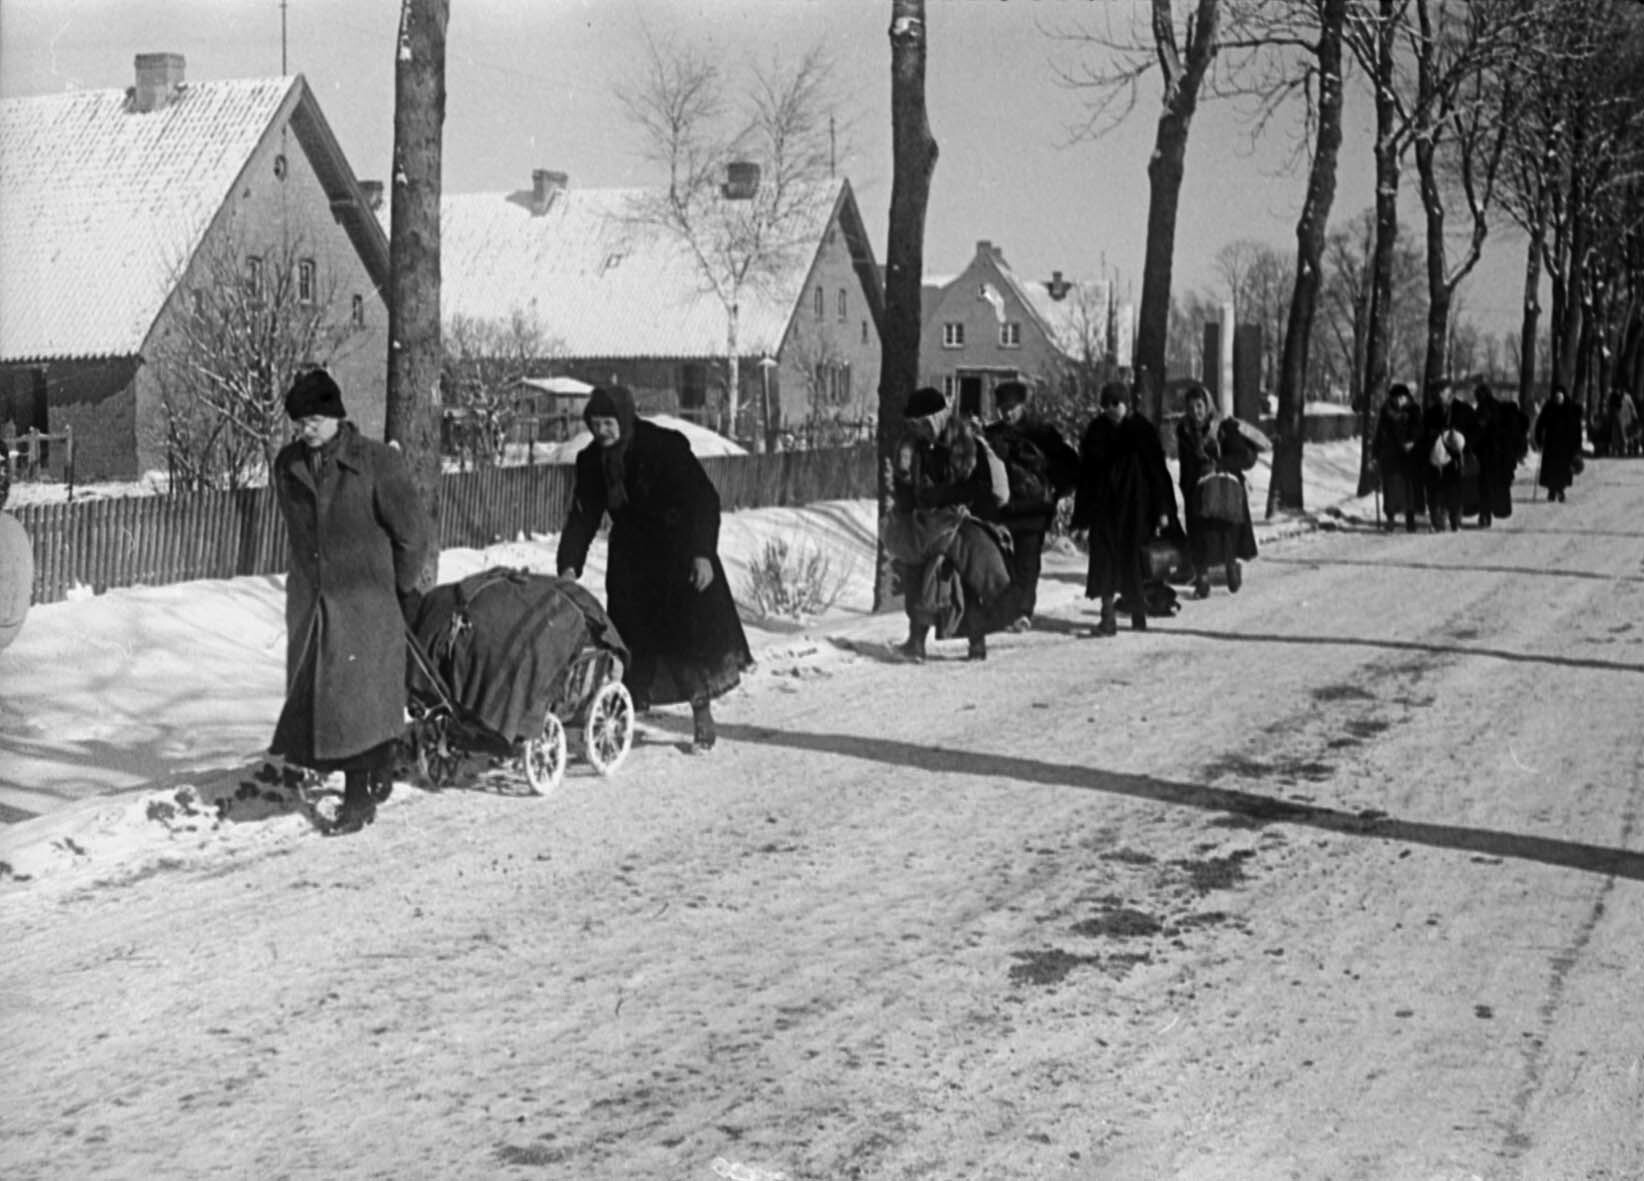 Deutsche Einwohner kehren in ihre Wohnhäuser zurück, Halbinsel Seeland, Ostpreußen, Februar 1945 (Museum Berlin-Karlshorst RR-P)